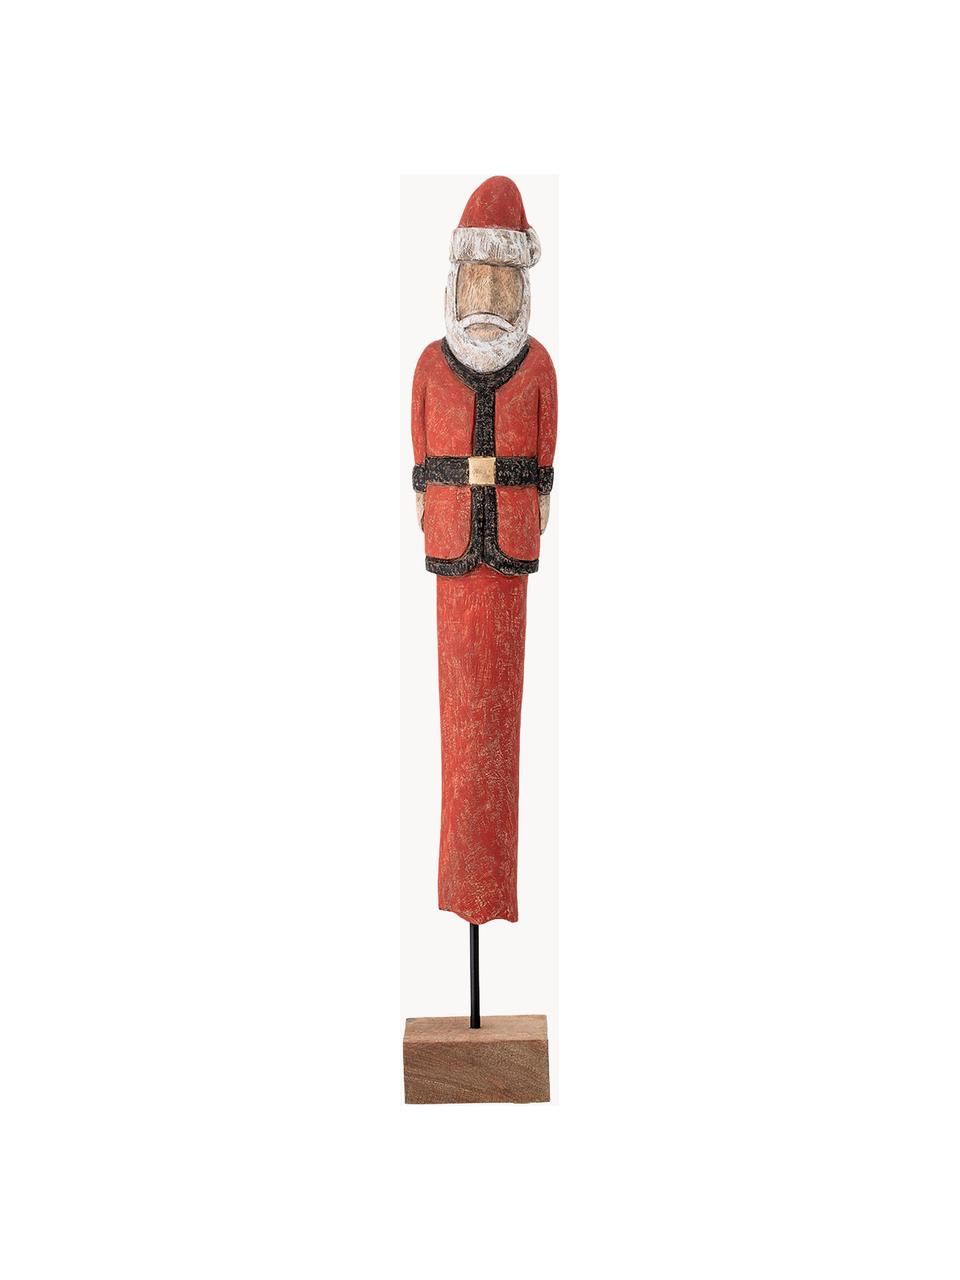 Deko-Weihnachtsmann Santa H 56 cm, Mangoholz, beschichtet, Metall, Rot, Weiß, Schwarz, Helles Holz, B 10 x H 56 cm